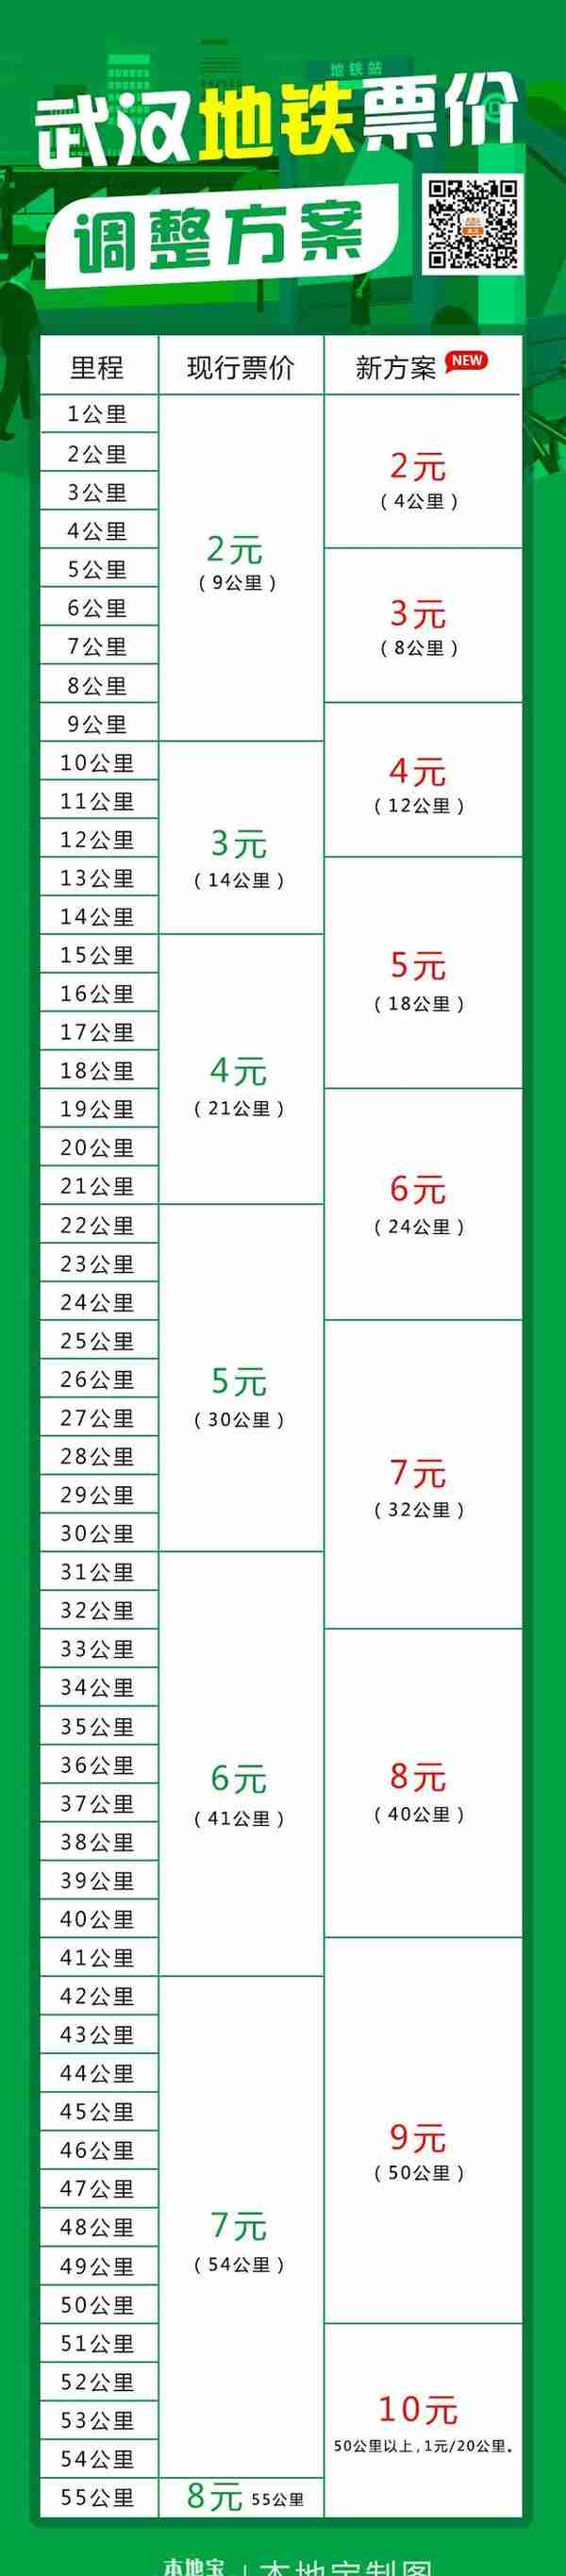 武汉地铁乘车新优惠来啦！2月1日起实施